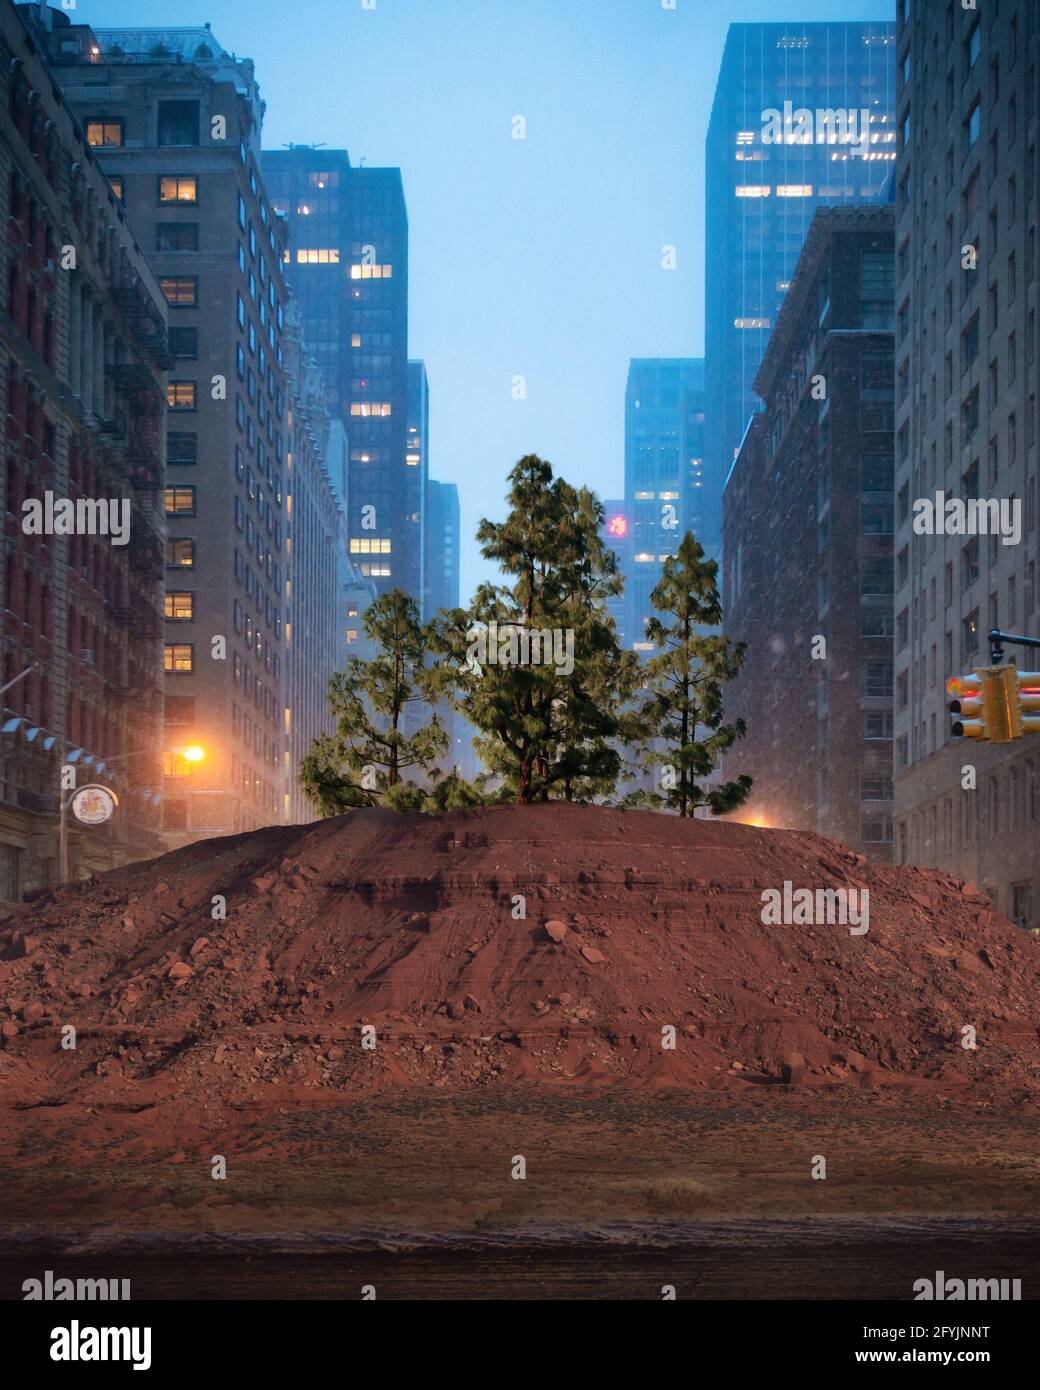 Arbre poussant dans un tas de terre au milieu de la route, Manhattan, New Yworks, États-Unis Banque D'Images